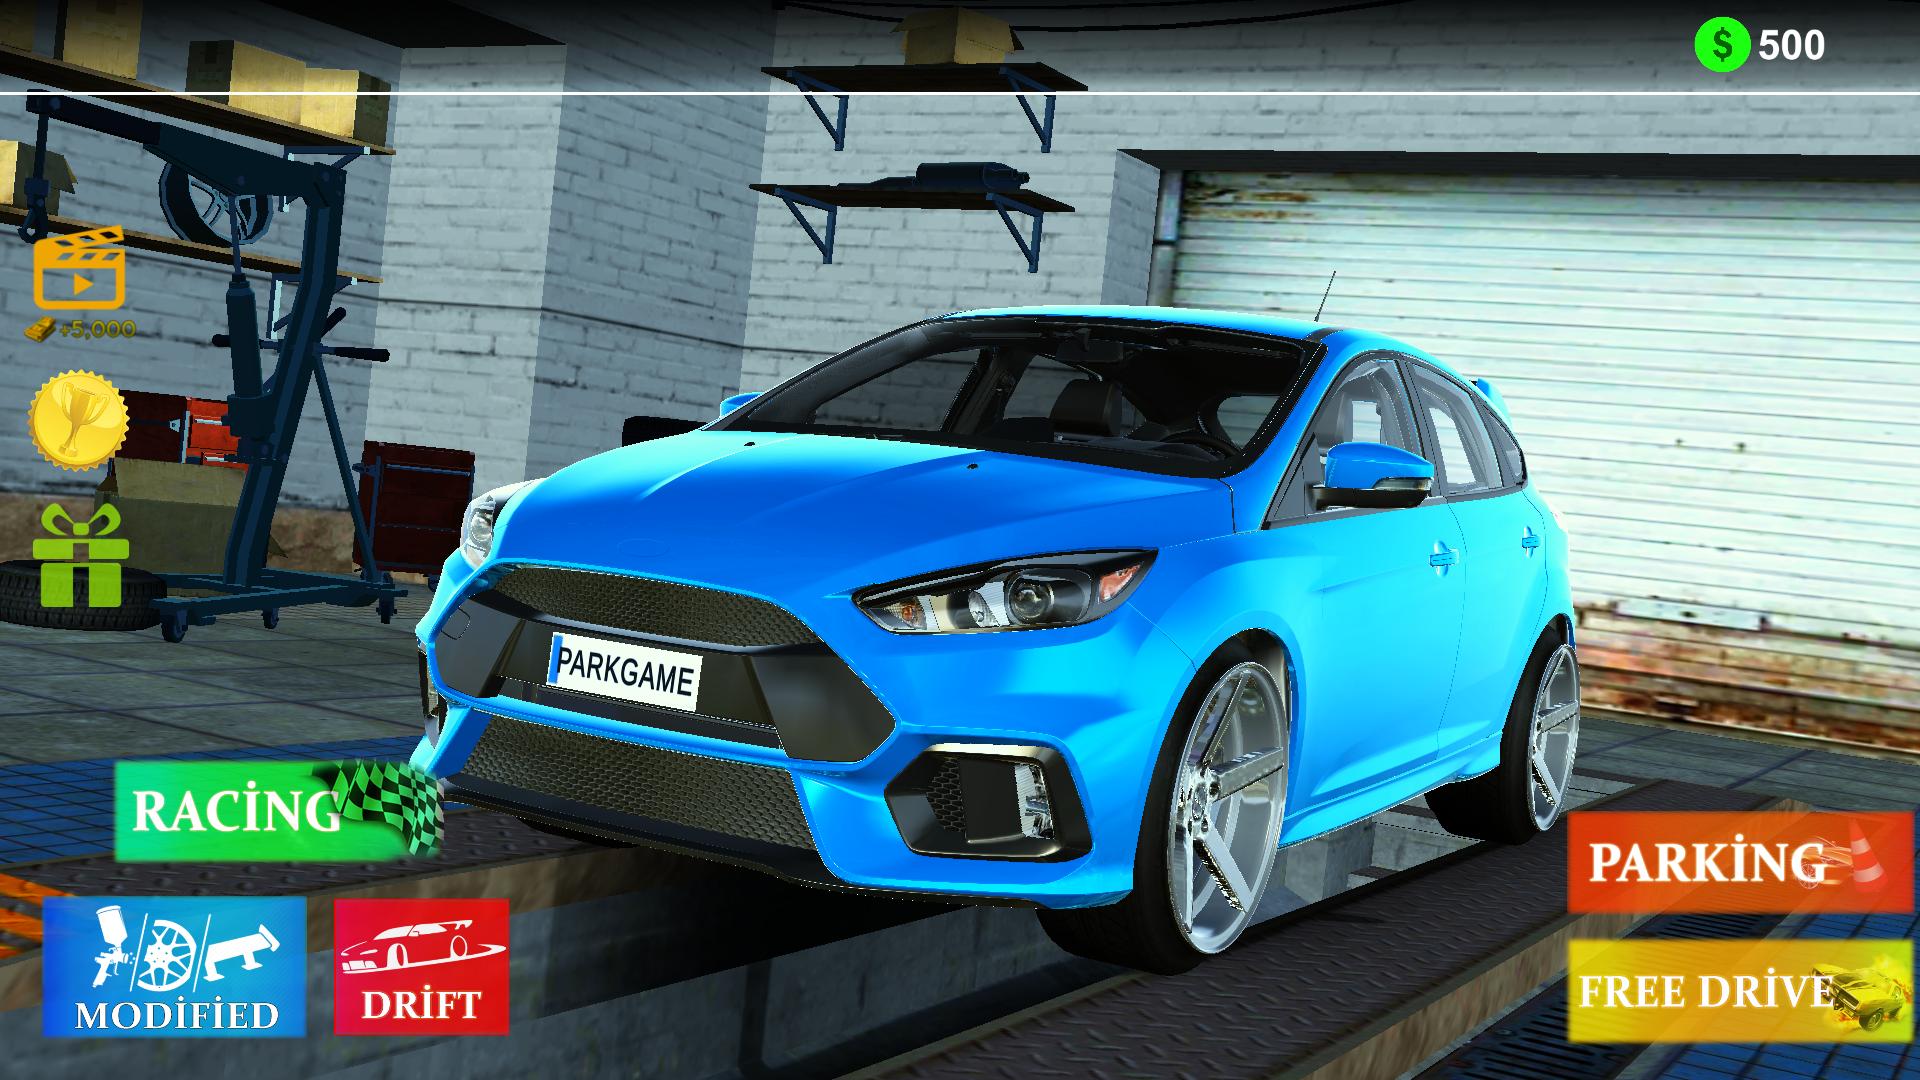 Focus Driving & Parking & Racing Simulator 2021 0.1 Screenshot 1